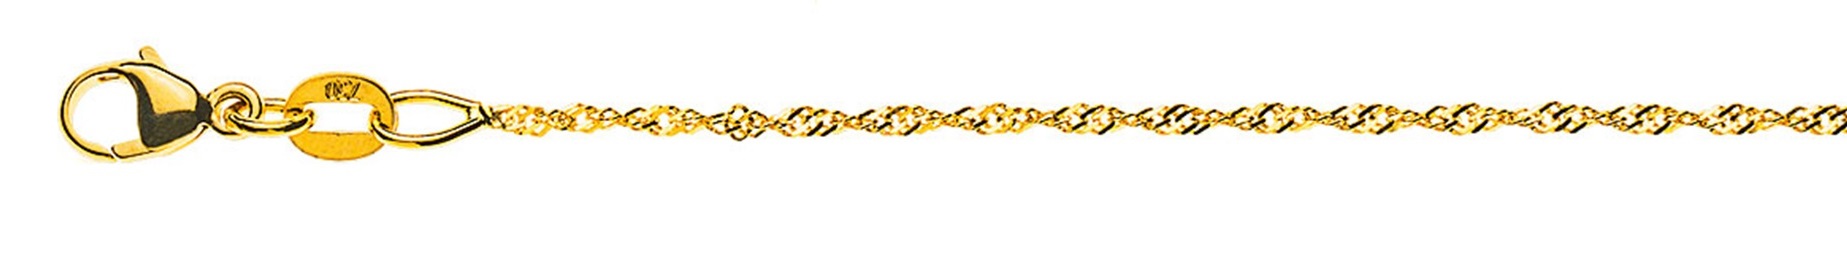 AURONOS Prestige Halskette Gelbgold 18K Singapurkette 42cm 1.2mm